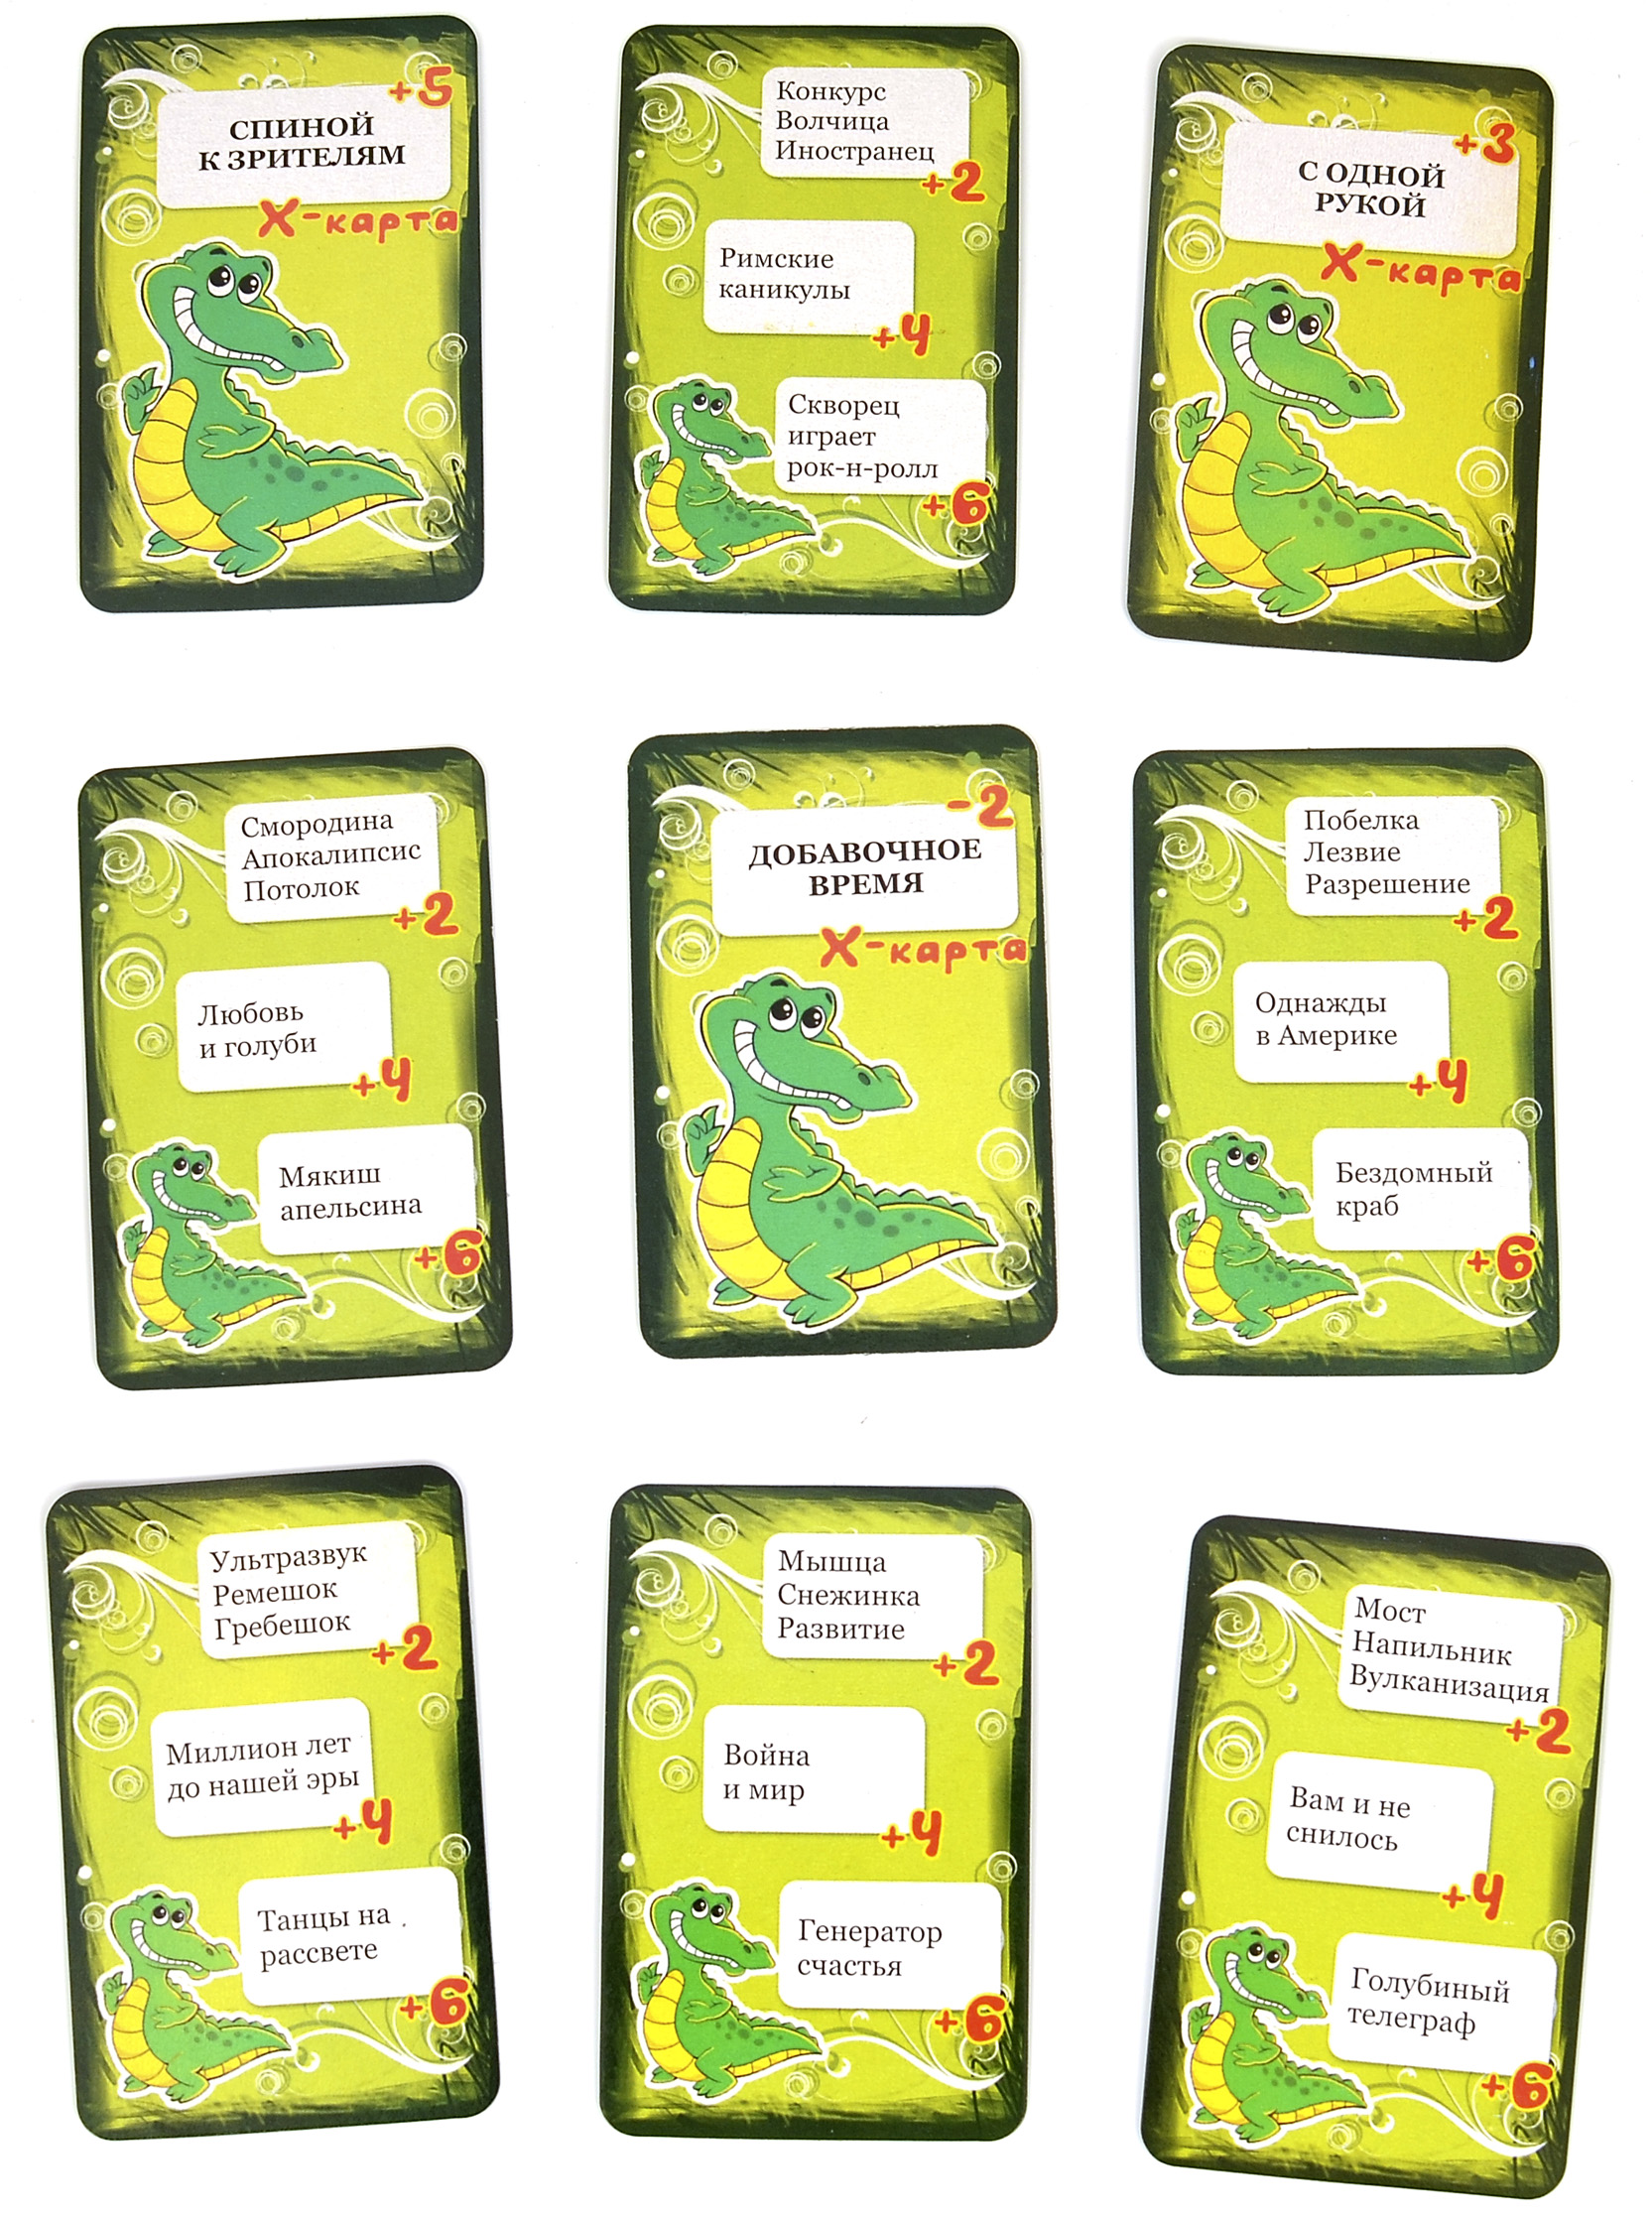 Картинки для игры в крокодил для детей